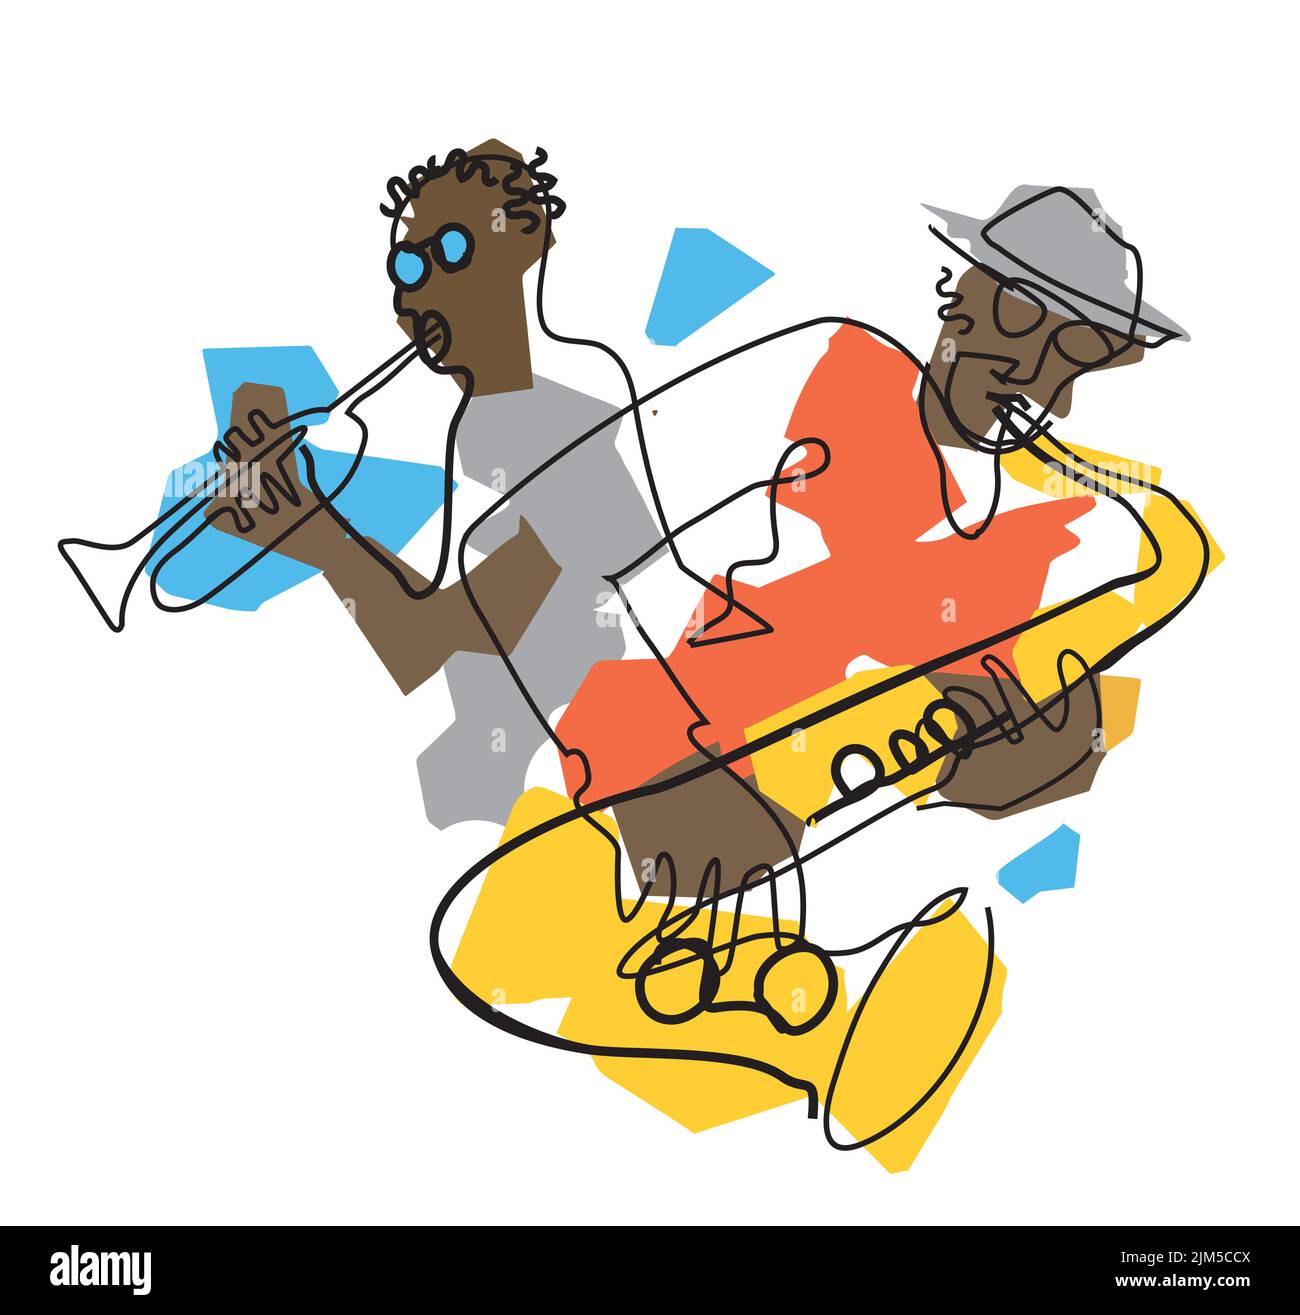 Jazz-Thema mit schwarzen Männern, Trompeter und Saxophonist. Expressive Illustration von zwei Jazzmusikern, durchgehende Linienzeichnung. Stock Vektor